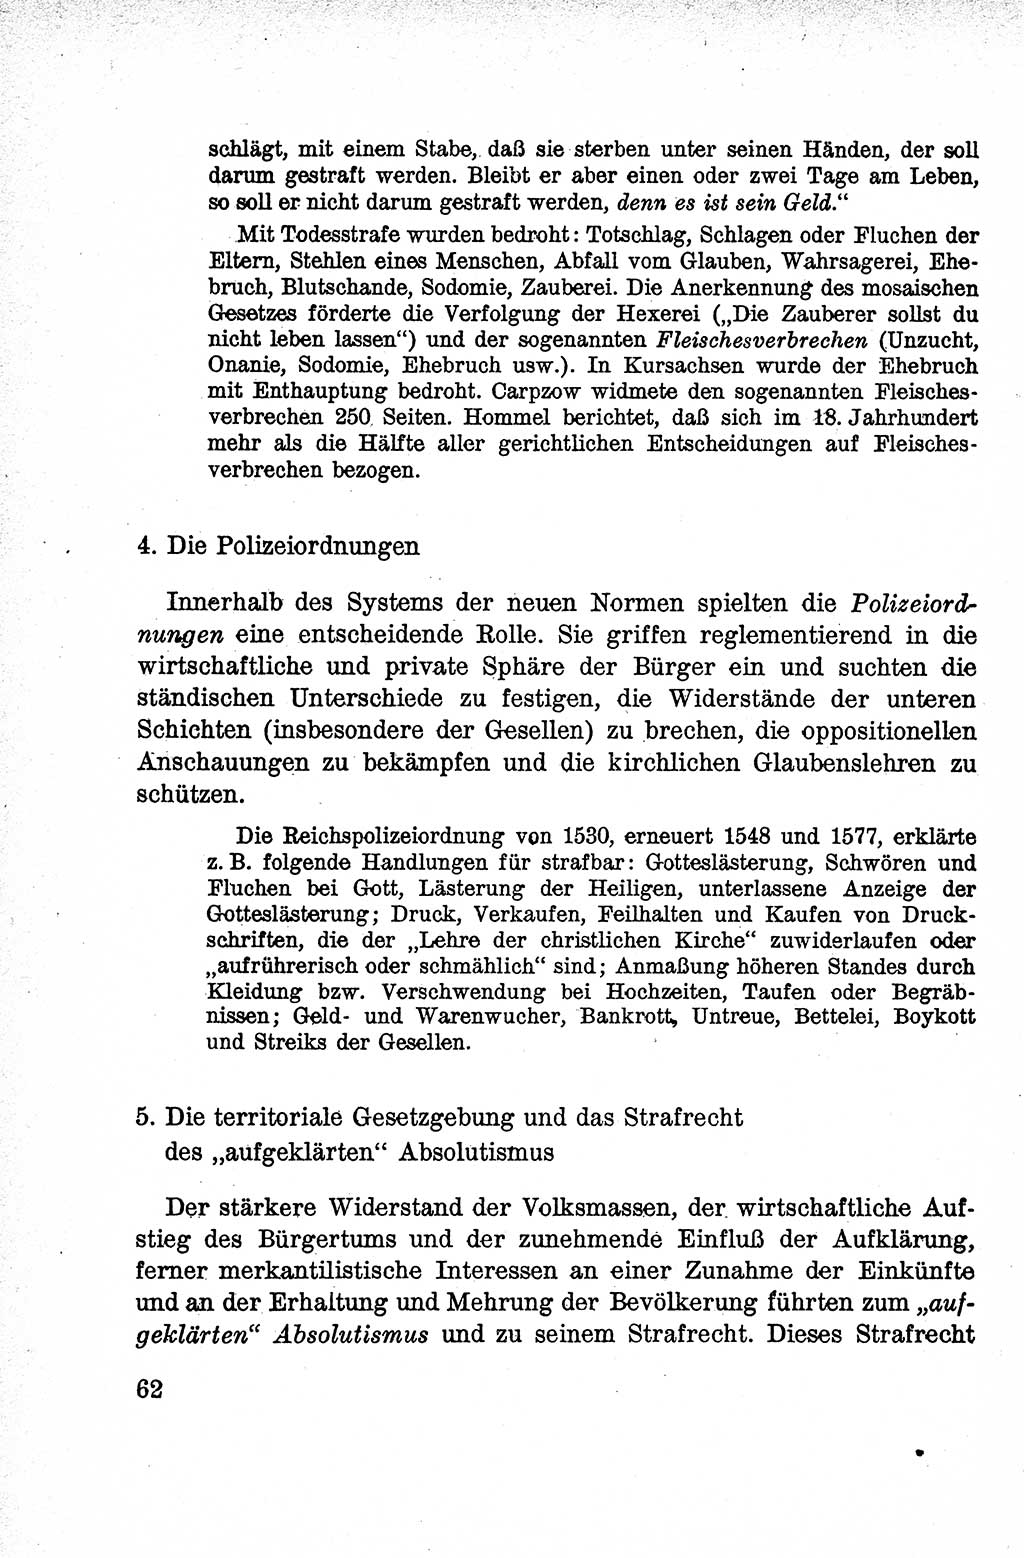 Lehrbuch des Strafrechts der Deutschen Demokratischen Republik (DDR), Allgemeiner Teil 1959, Seite 62 (Lb. Strafr. DDR AT 1959, S. 62)